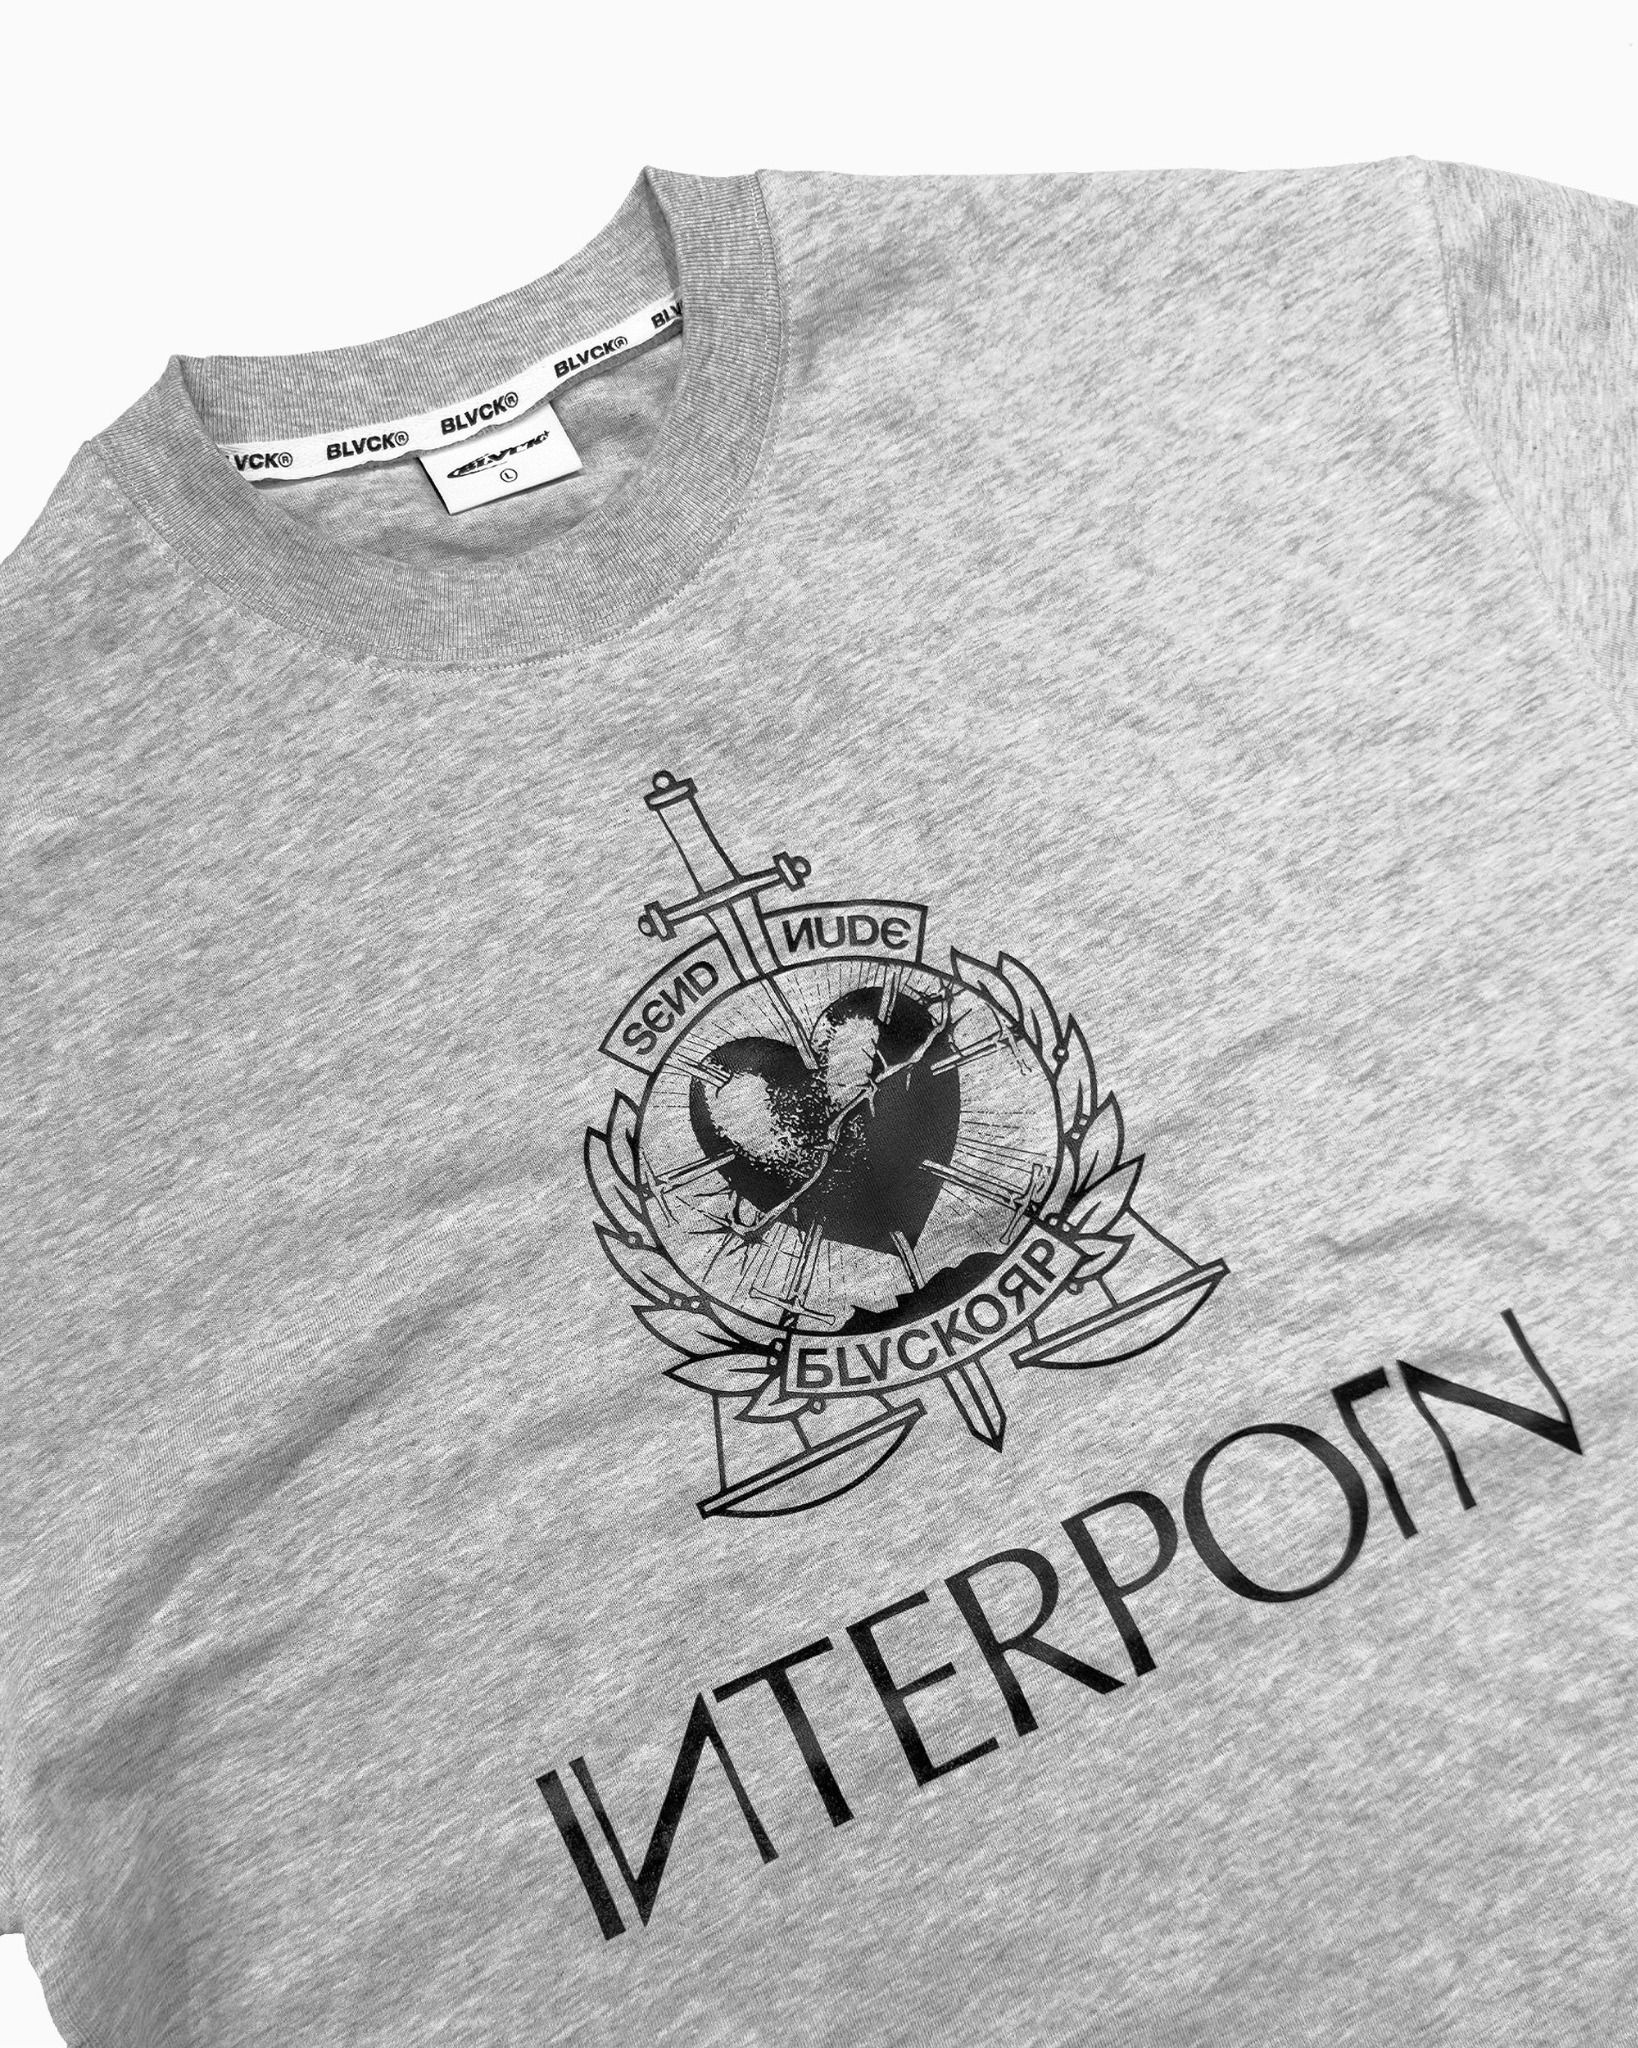  Interporn T-shirt 